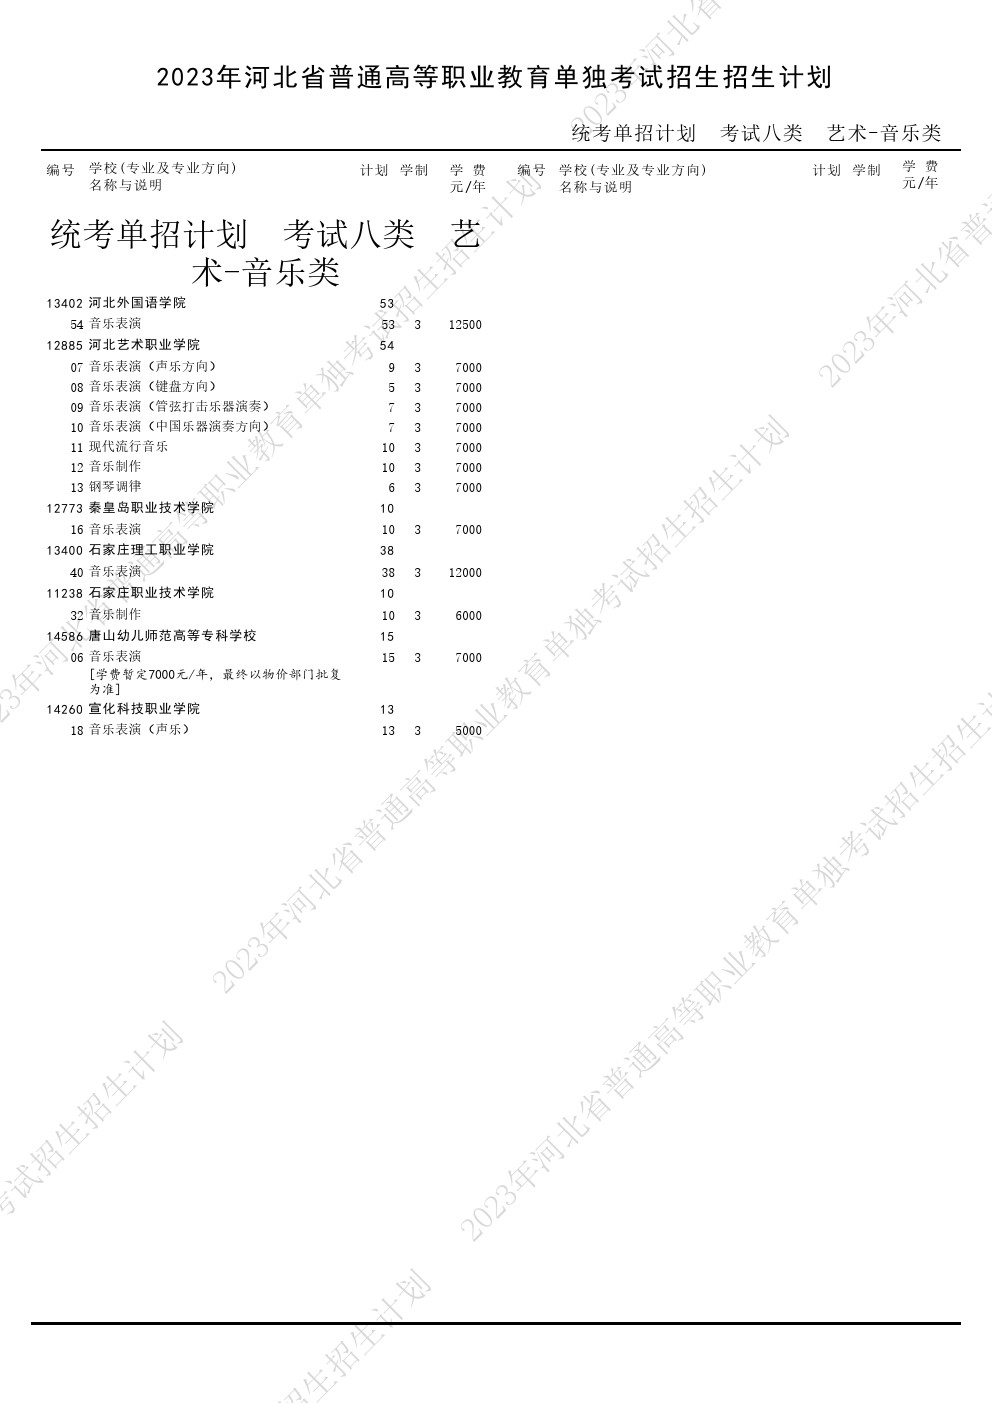 2023年河北省高职单招考试八类音乐类招生计划